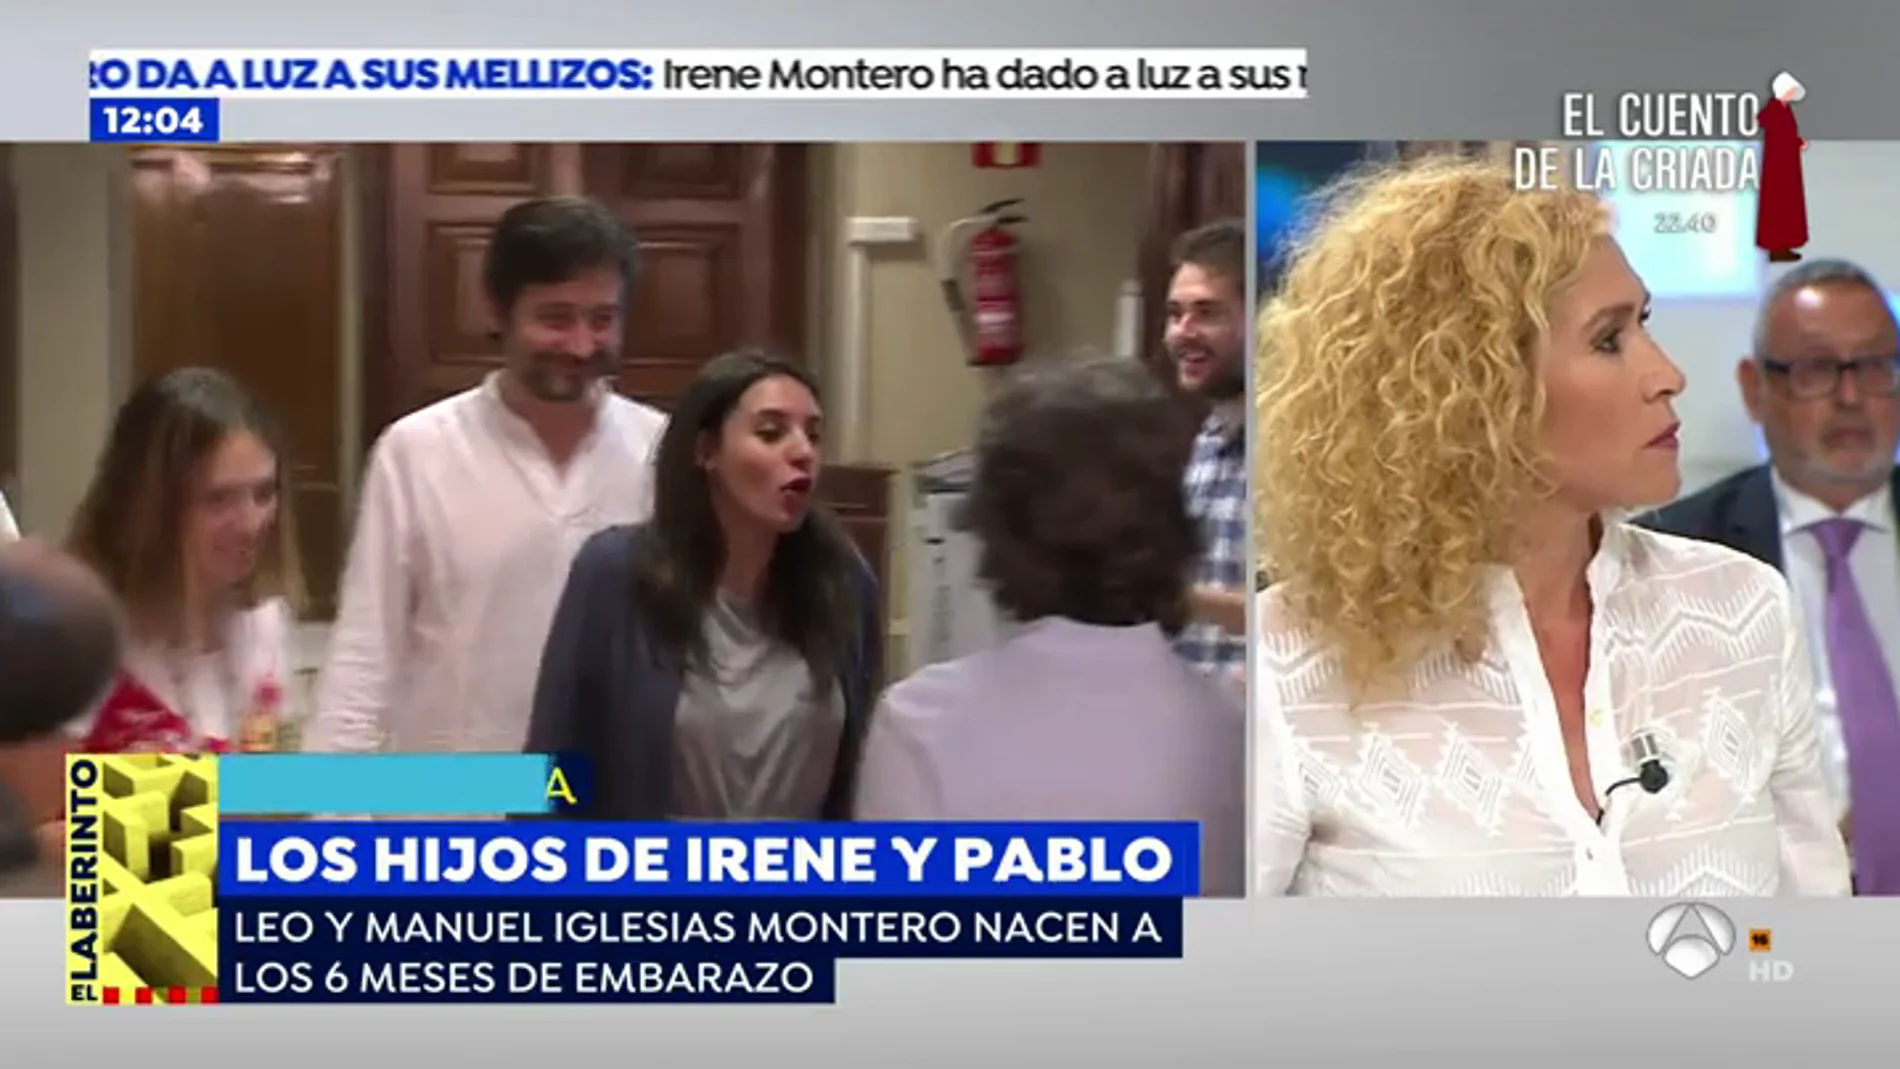  Cristina Fernández: "A Irene Montero se le puede haber adelantado el parto por un estado anímico complicado"